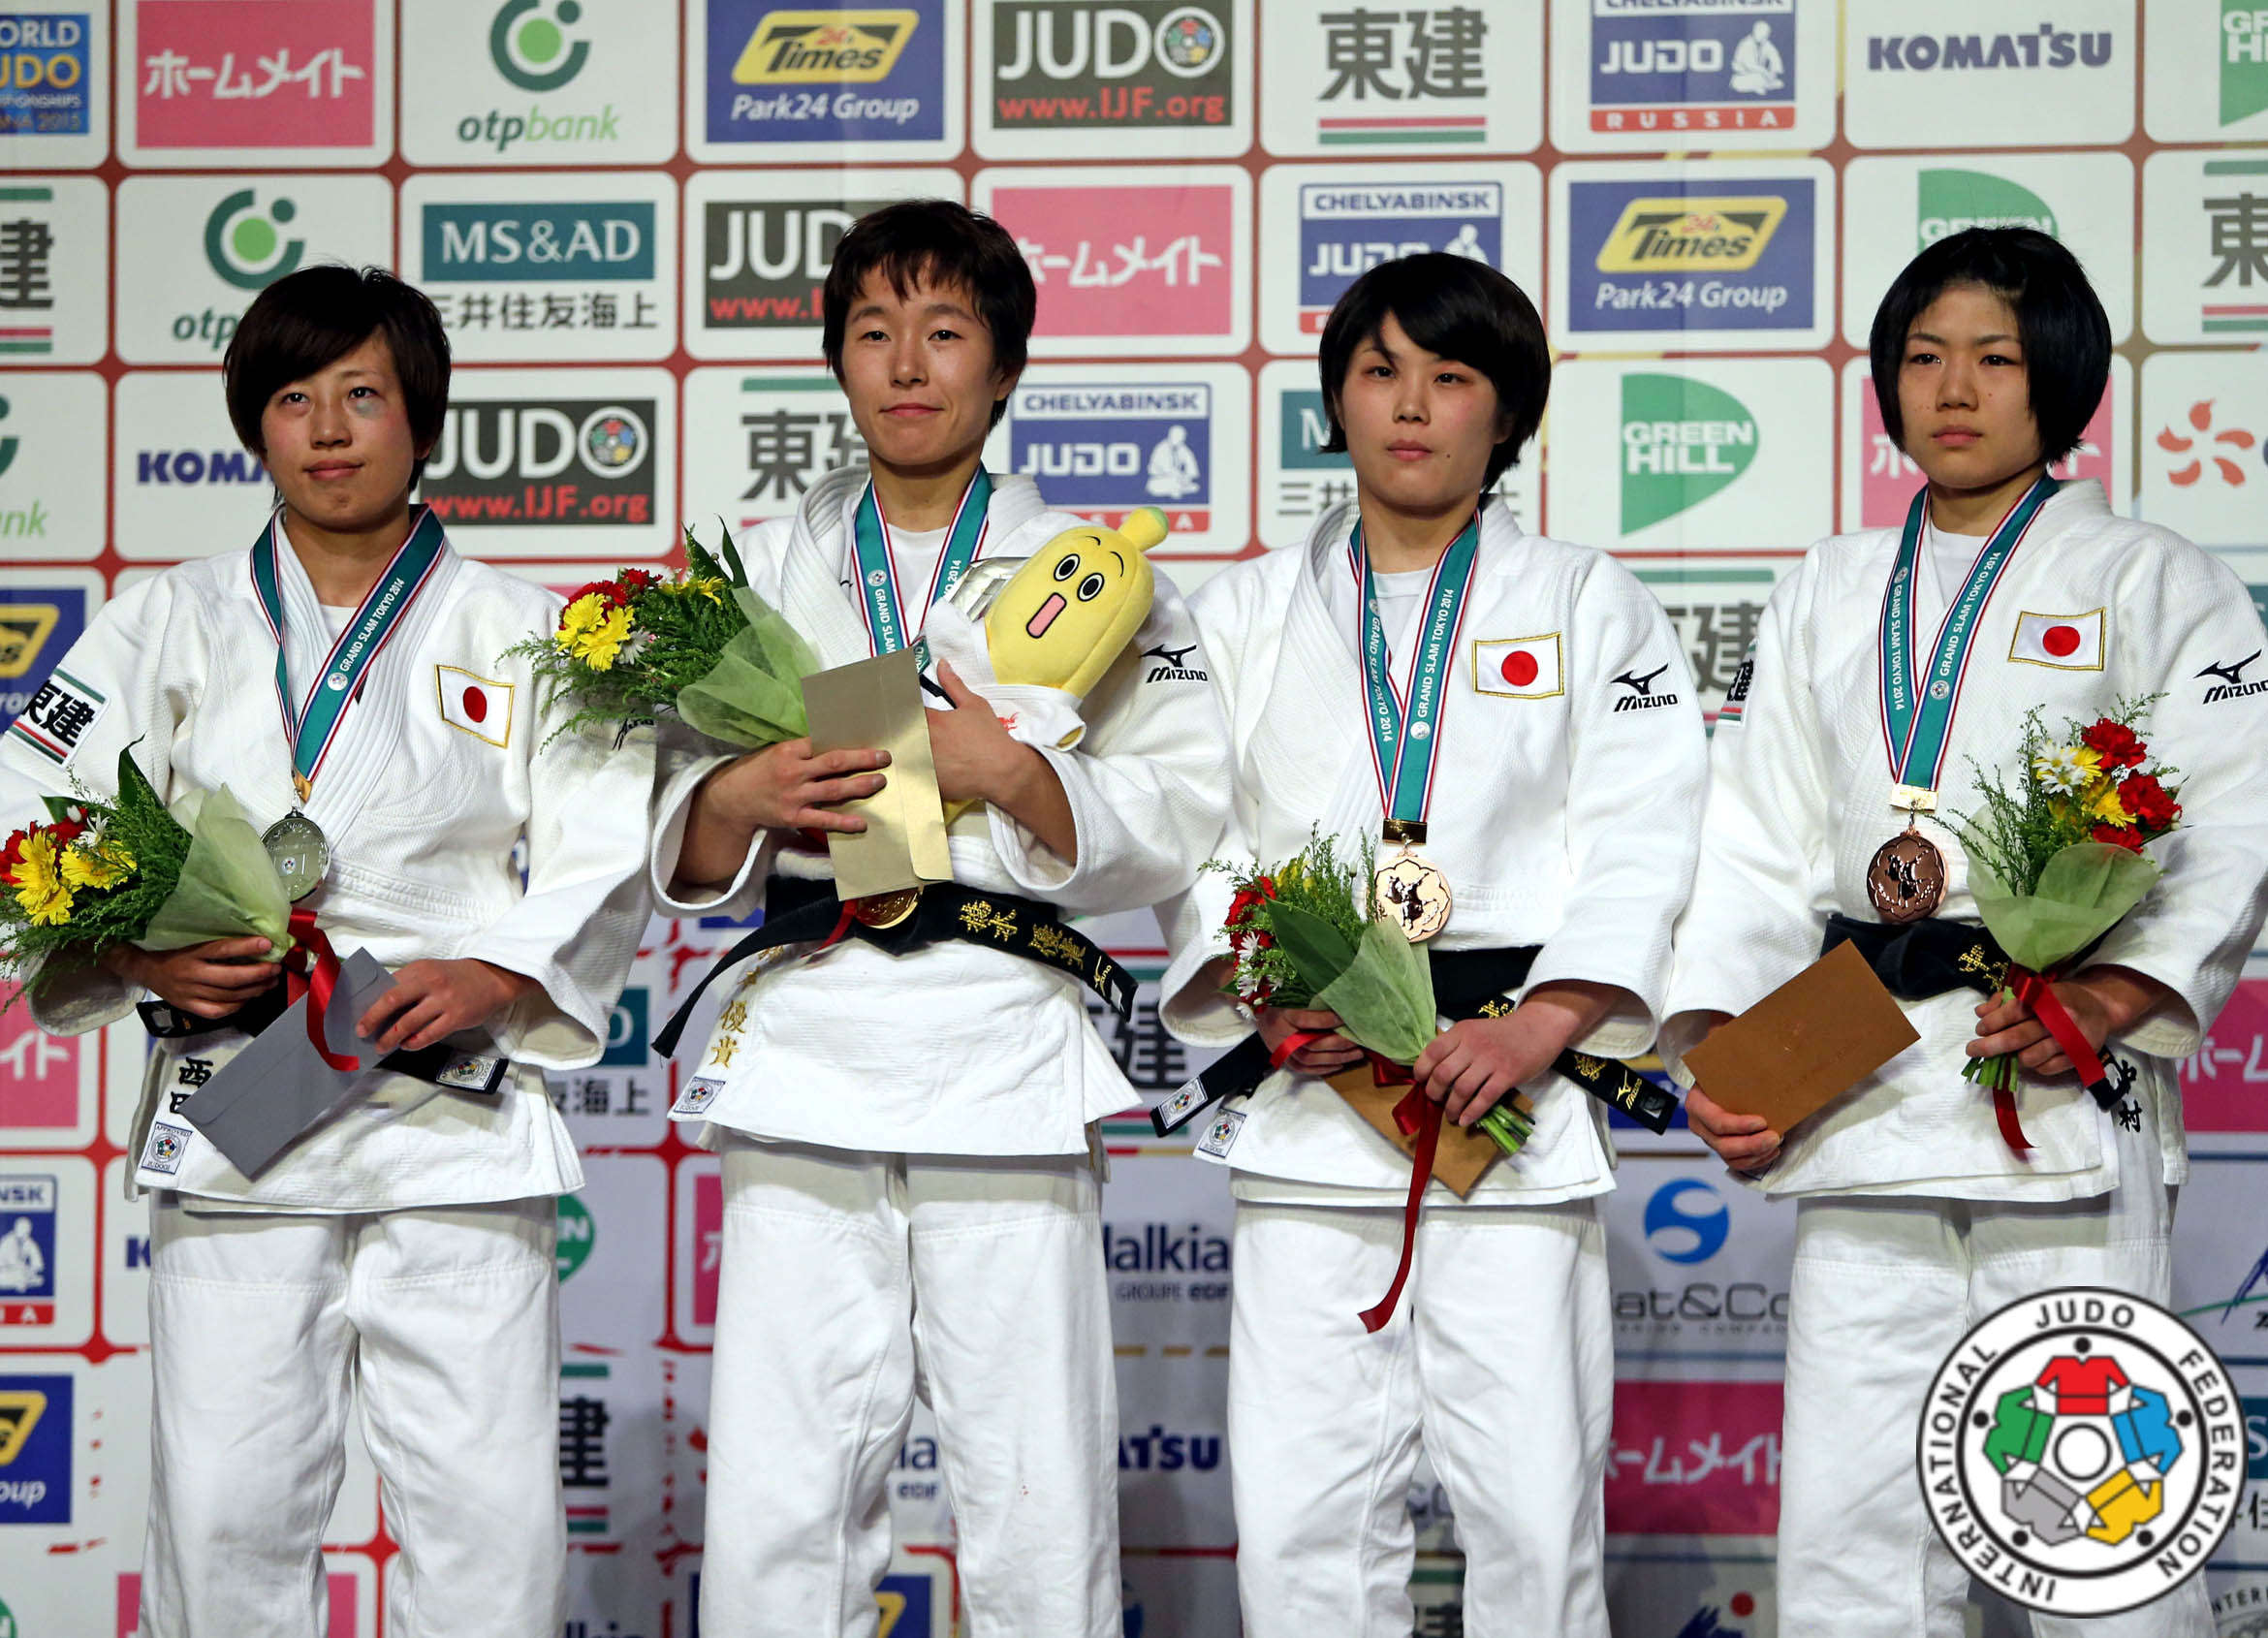 Giappone travolgente nel Grand Slam a Tokio, una vittoria per Giuffrida e Verde